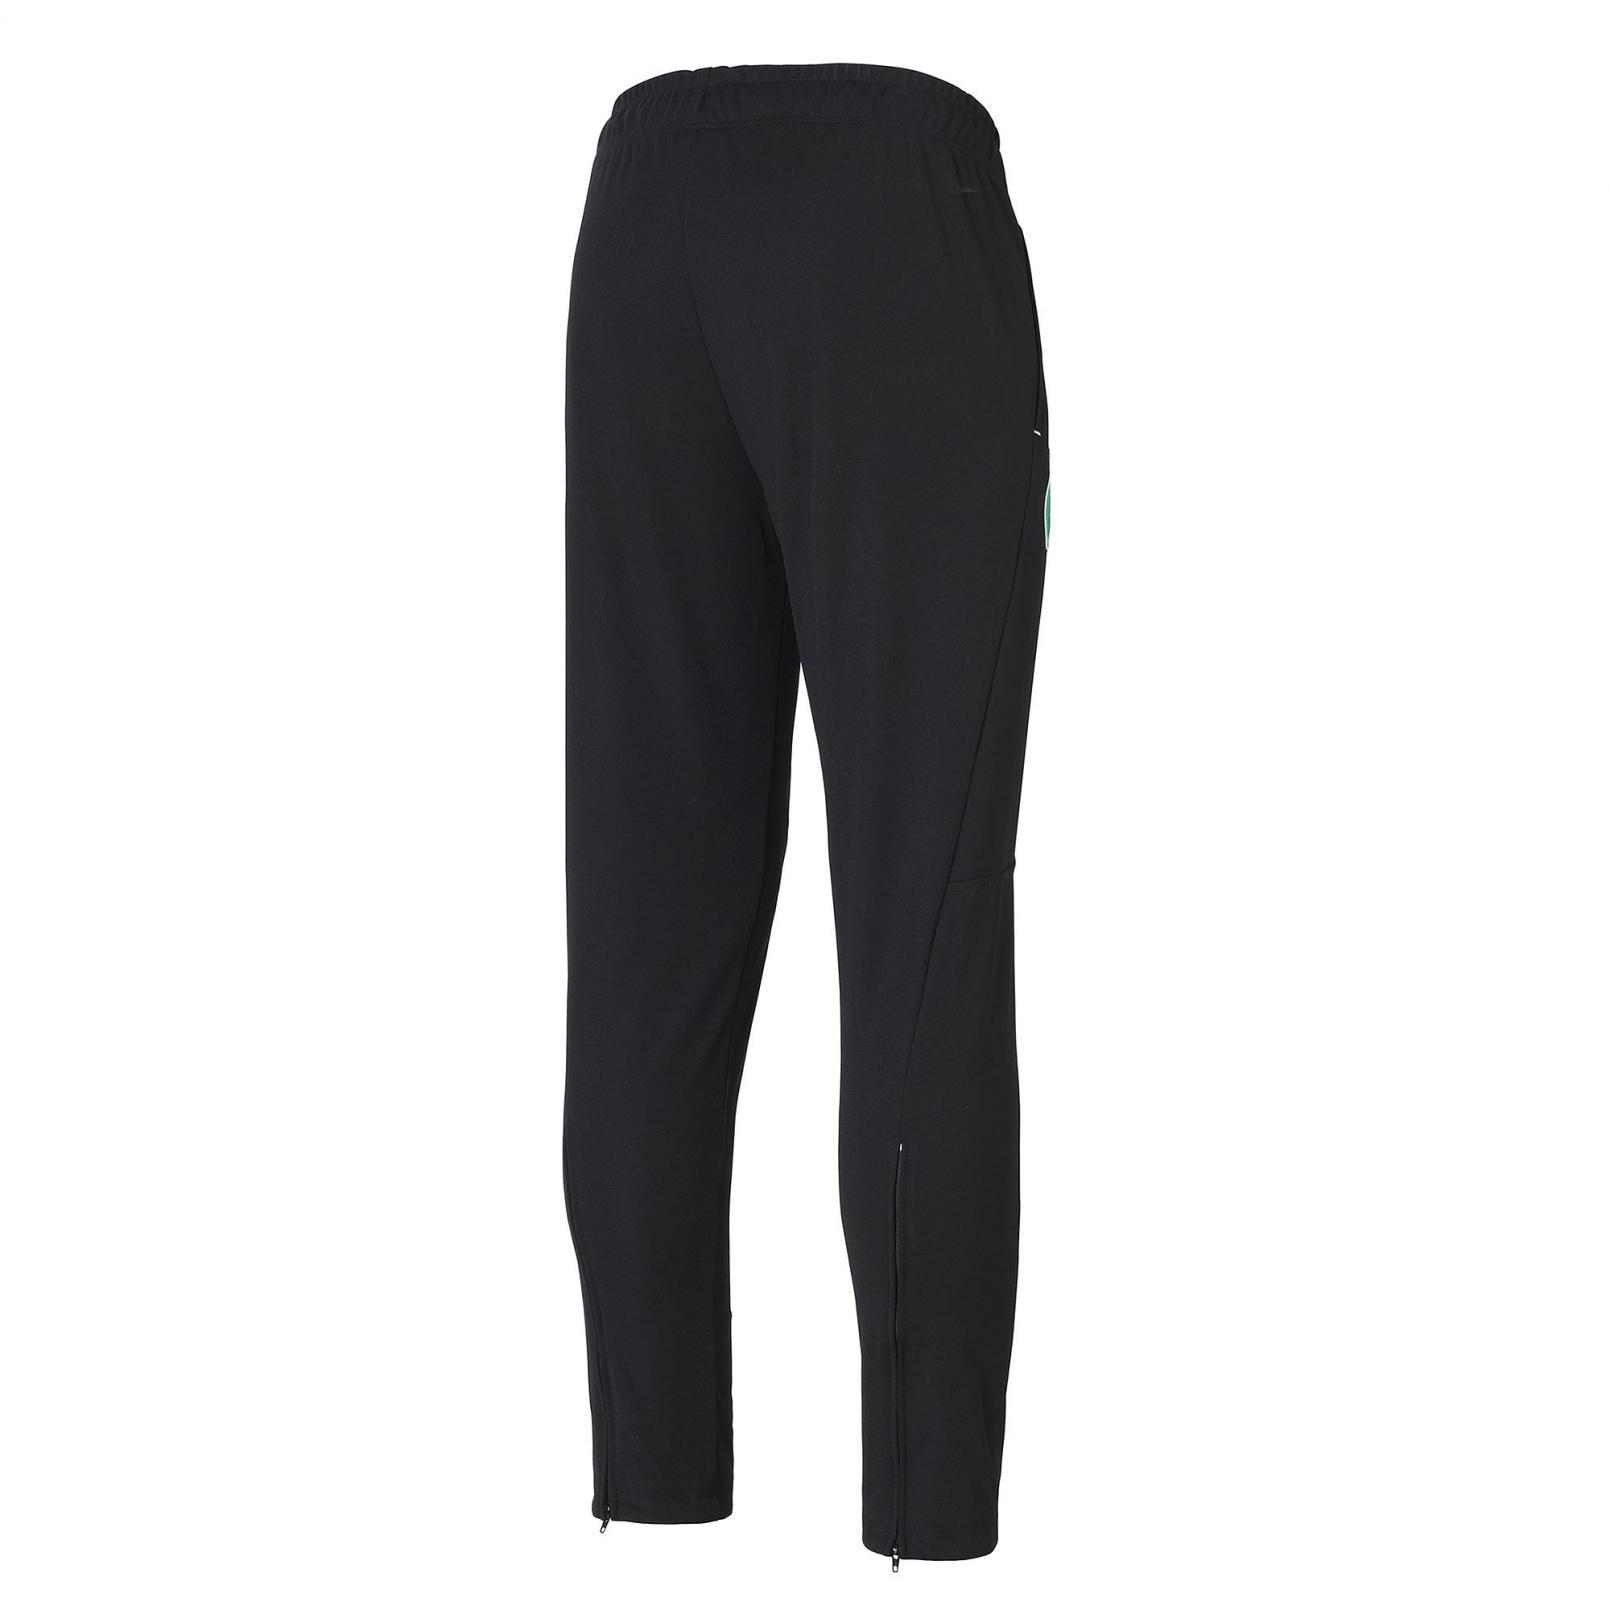 Pants – Le Coq Sportif ASSE Training Pant Black